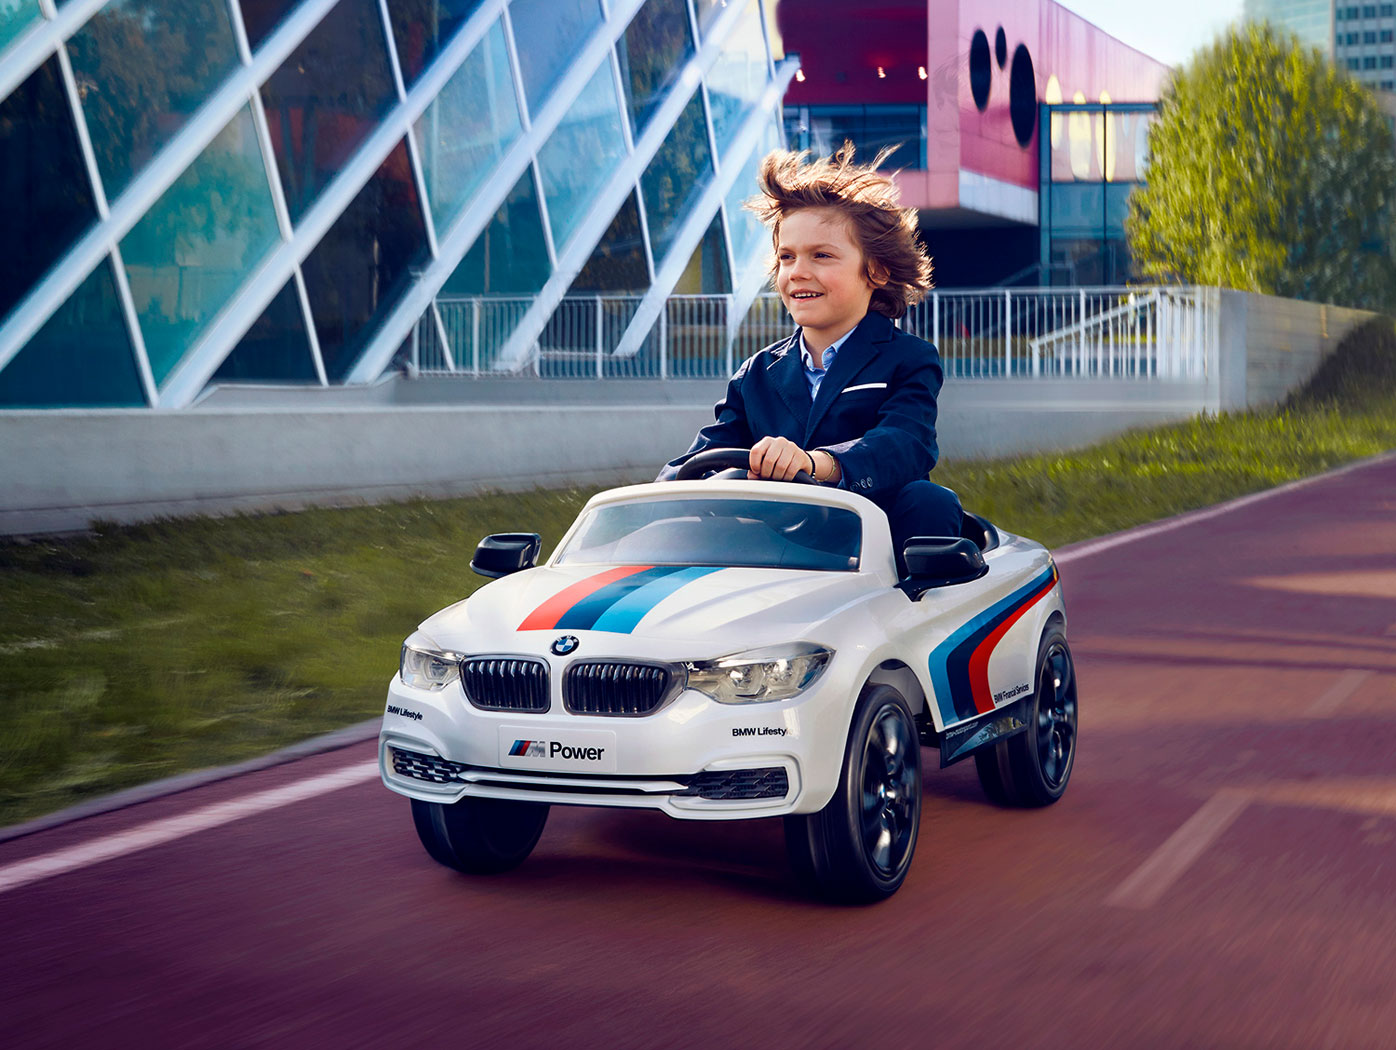 BMW_toy_